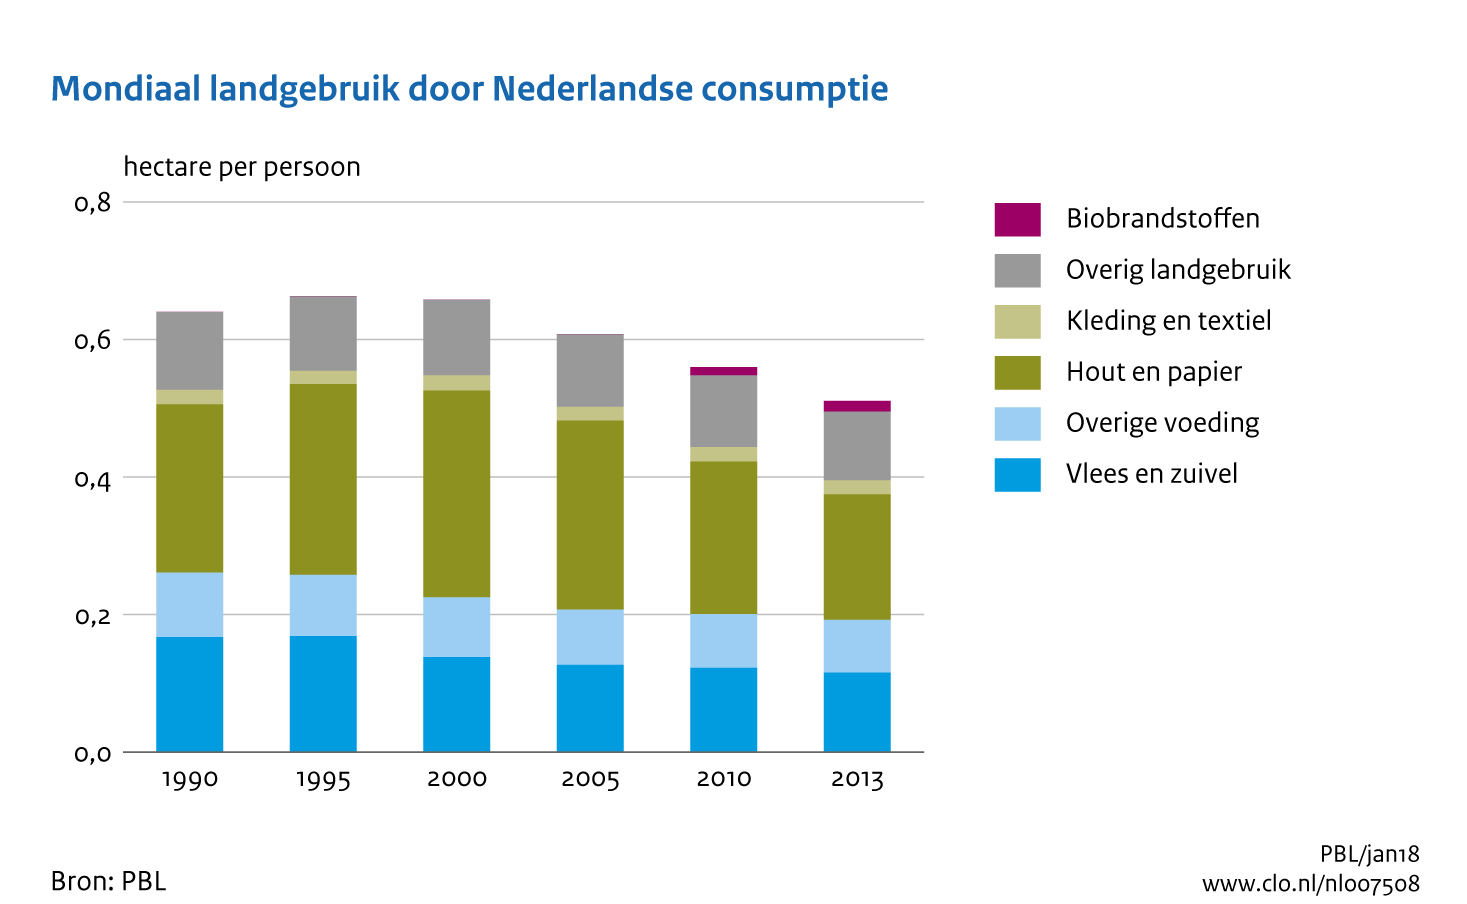 Figuur Landgebruik per persoon door Nederlandse consumptie. In de rest van de tekst wordt deze figuur uitgebreider uitgelegd.